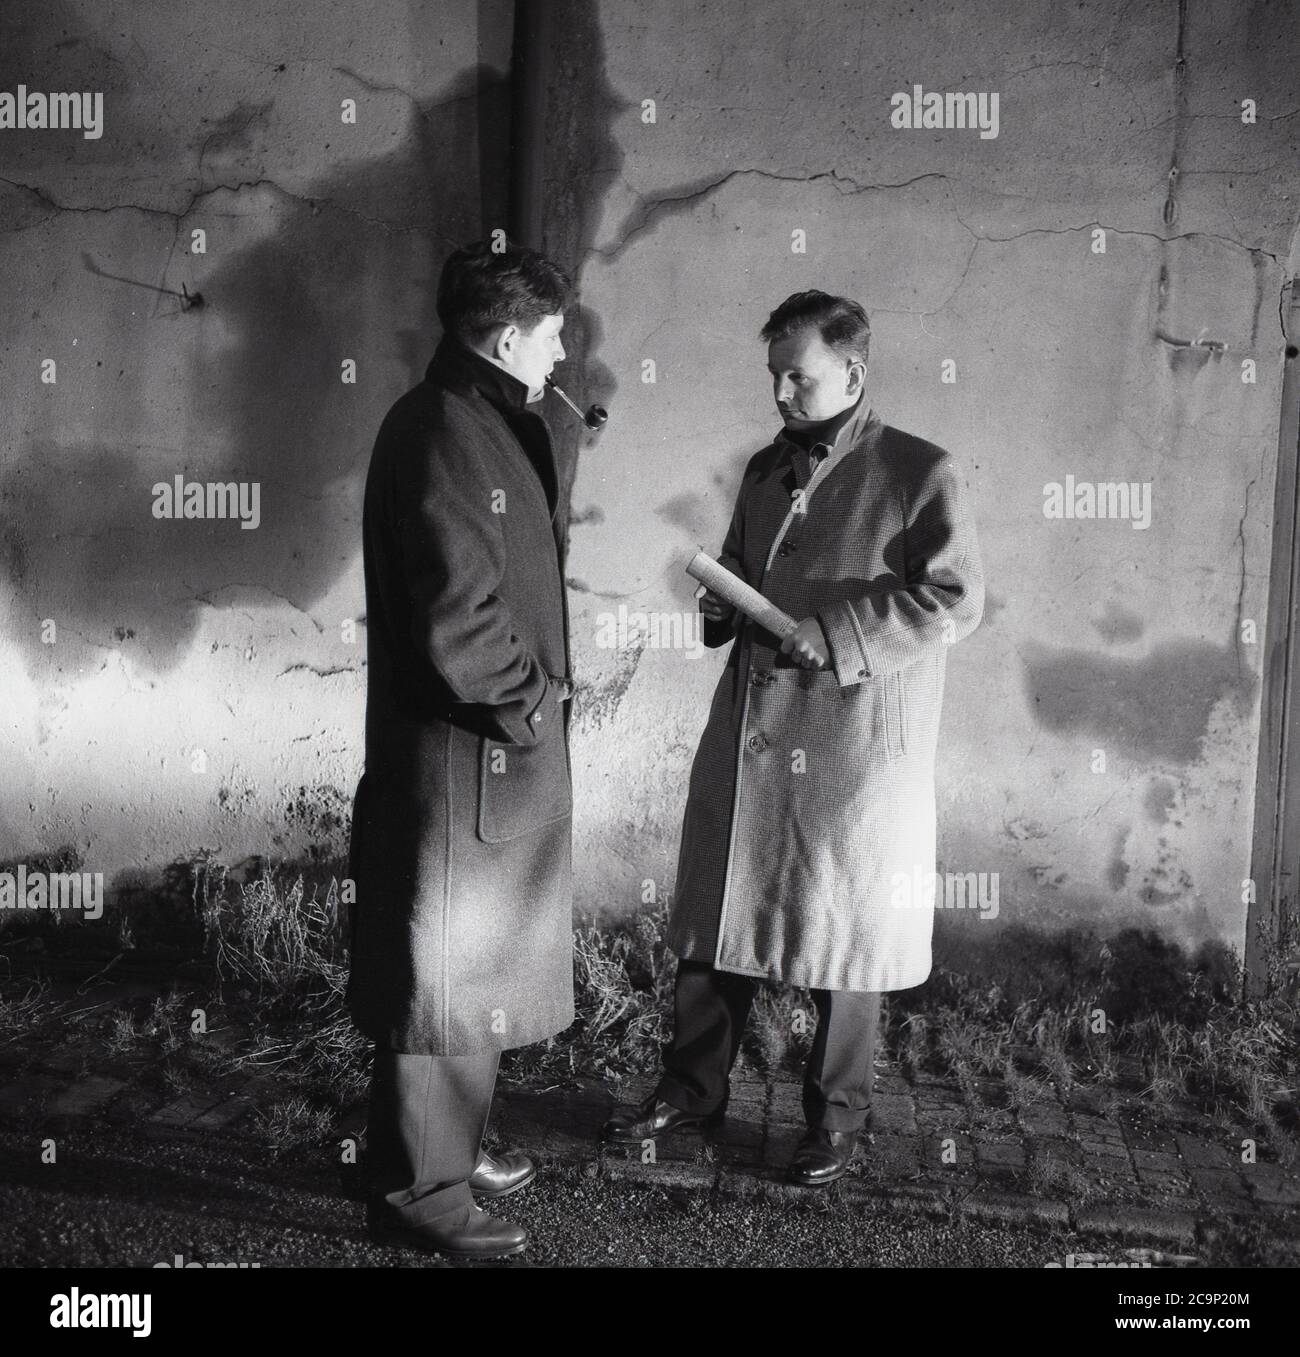 Anni Sessanta, storico, sera e accanto ad un alto muro, due uomini che indossano soprabiti che hanno un incontro segreto o clandestino, con uno degli uomini che fuma un tubo e l'altro che tiene un rotolo di documenti, Londra, Inghilterra, Regno Unito. Foto Stock